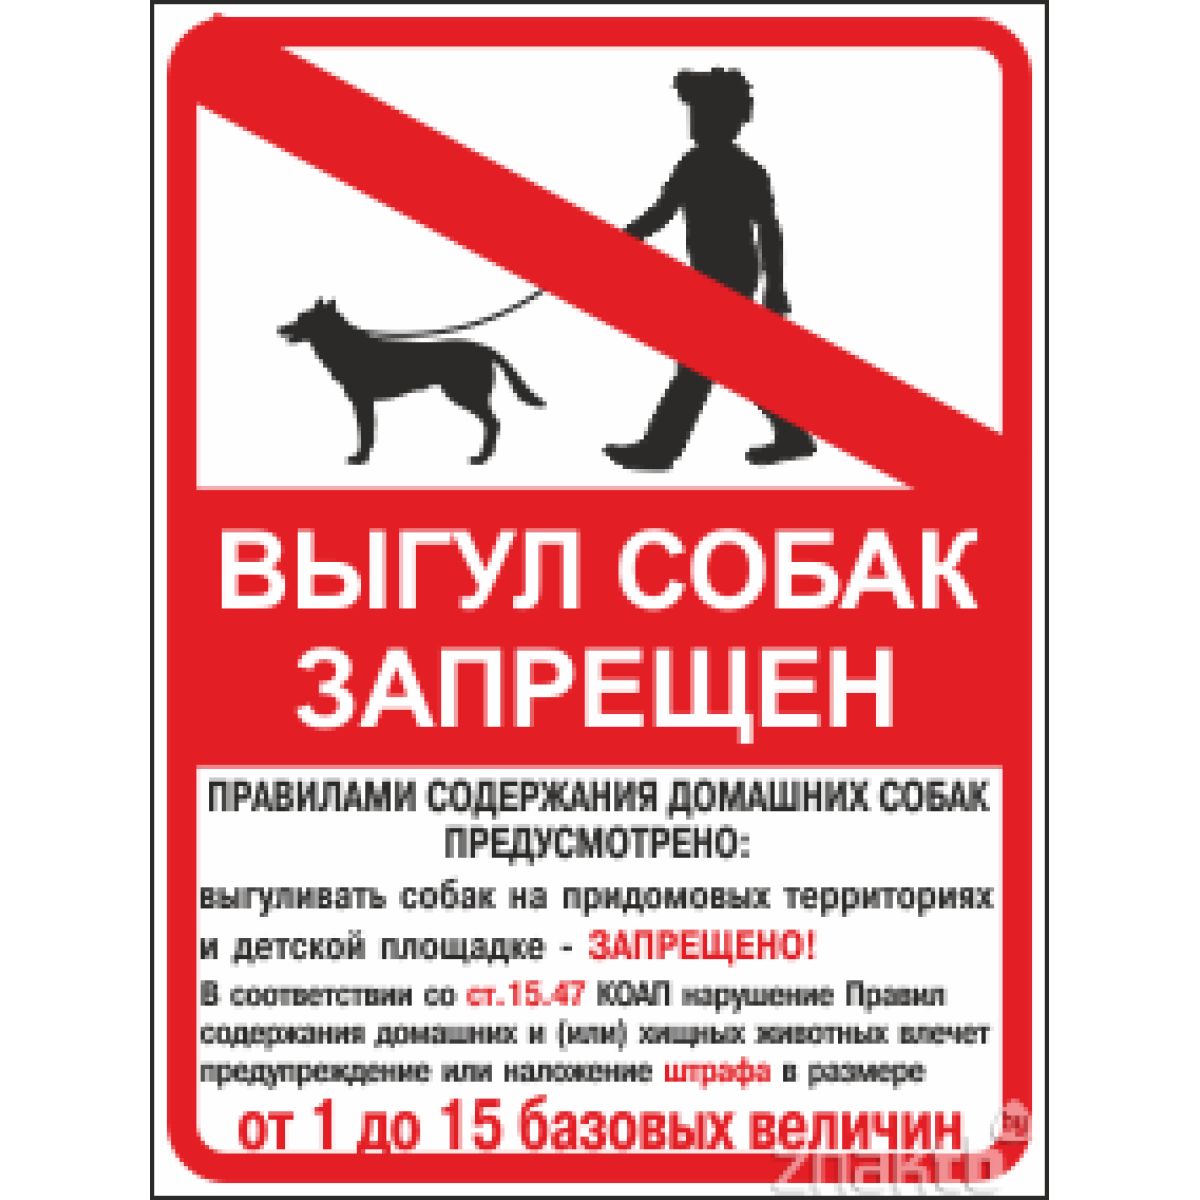 Знак "Выгул собак запрещен" с уточняющей надписью